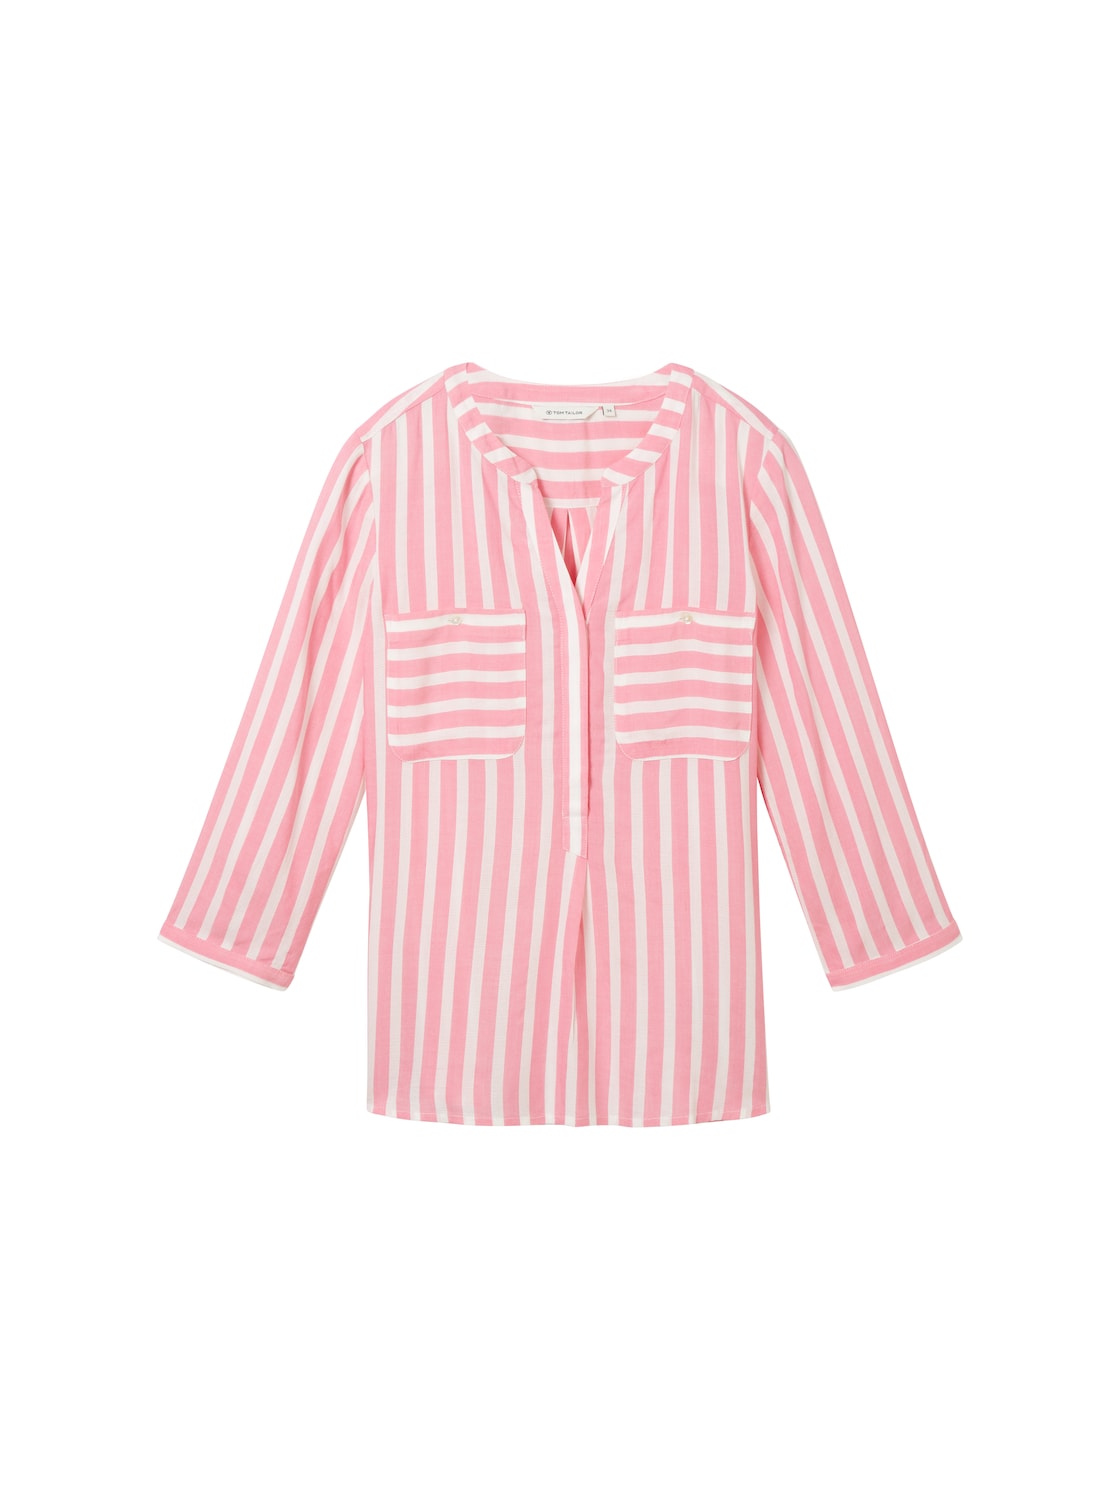 TOM TAILOR Damen Gestreifte Bluse mit Taschen, rosa, Streifenmuster, Gr. 46 von Tom Tailor